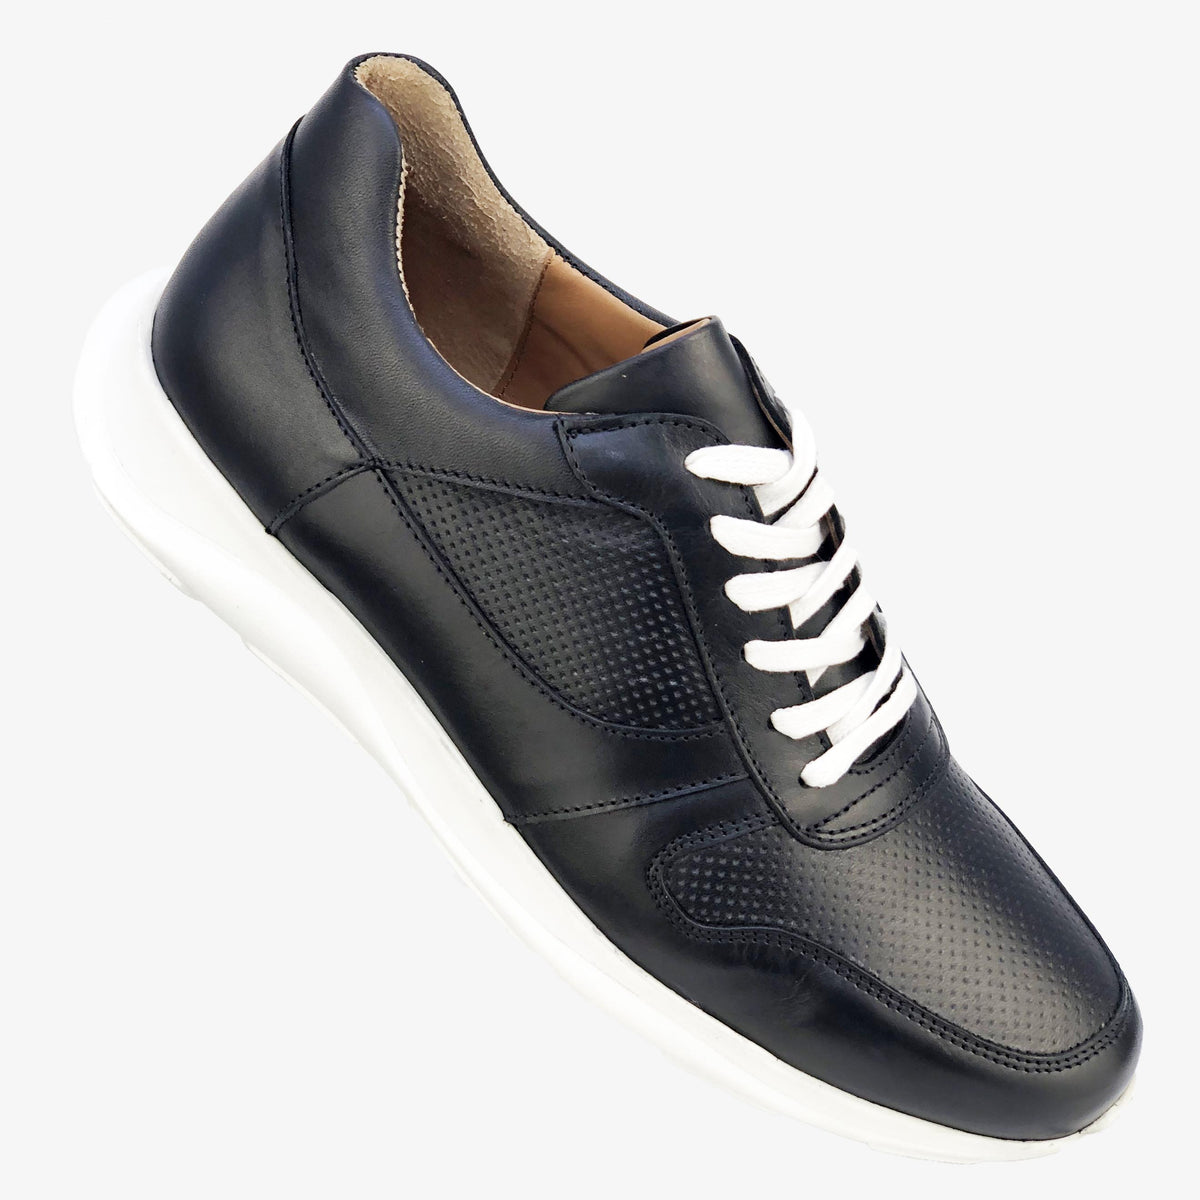 BSK008-015 - Chaussure cuir noir - deluxe-maroc